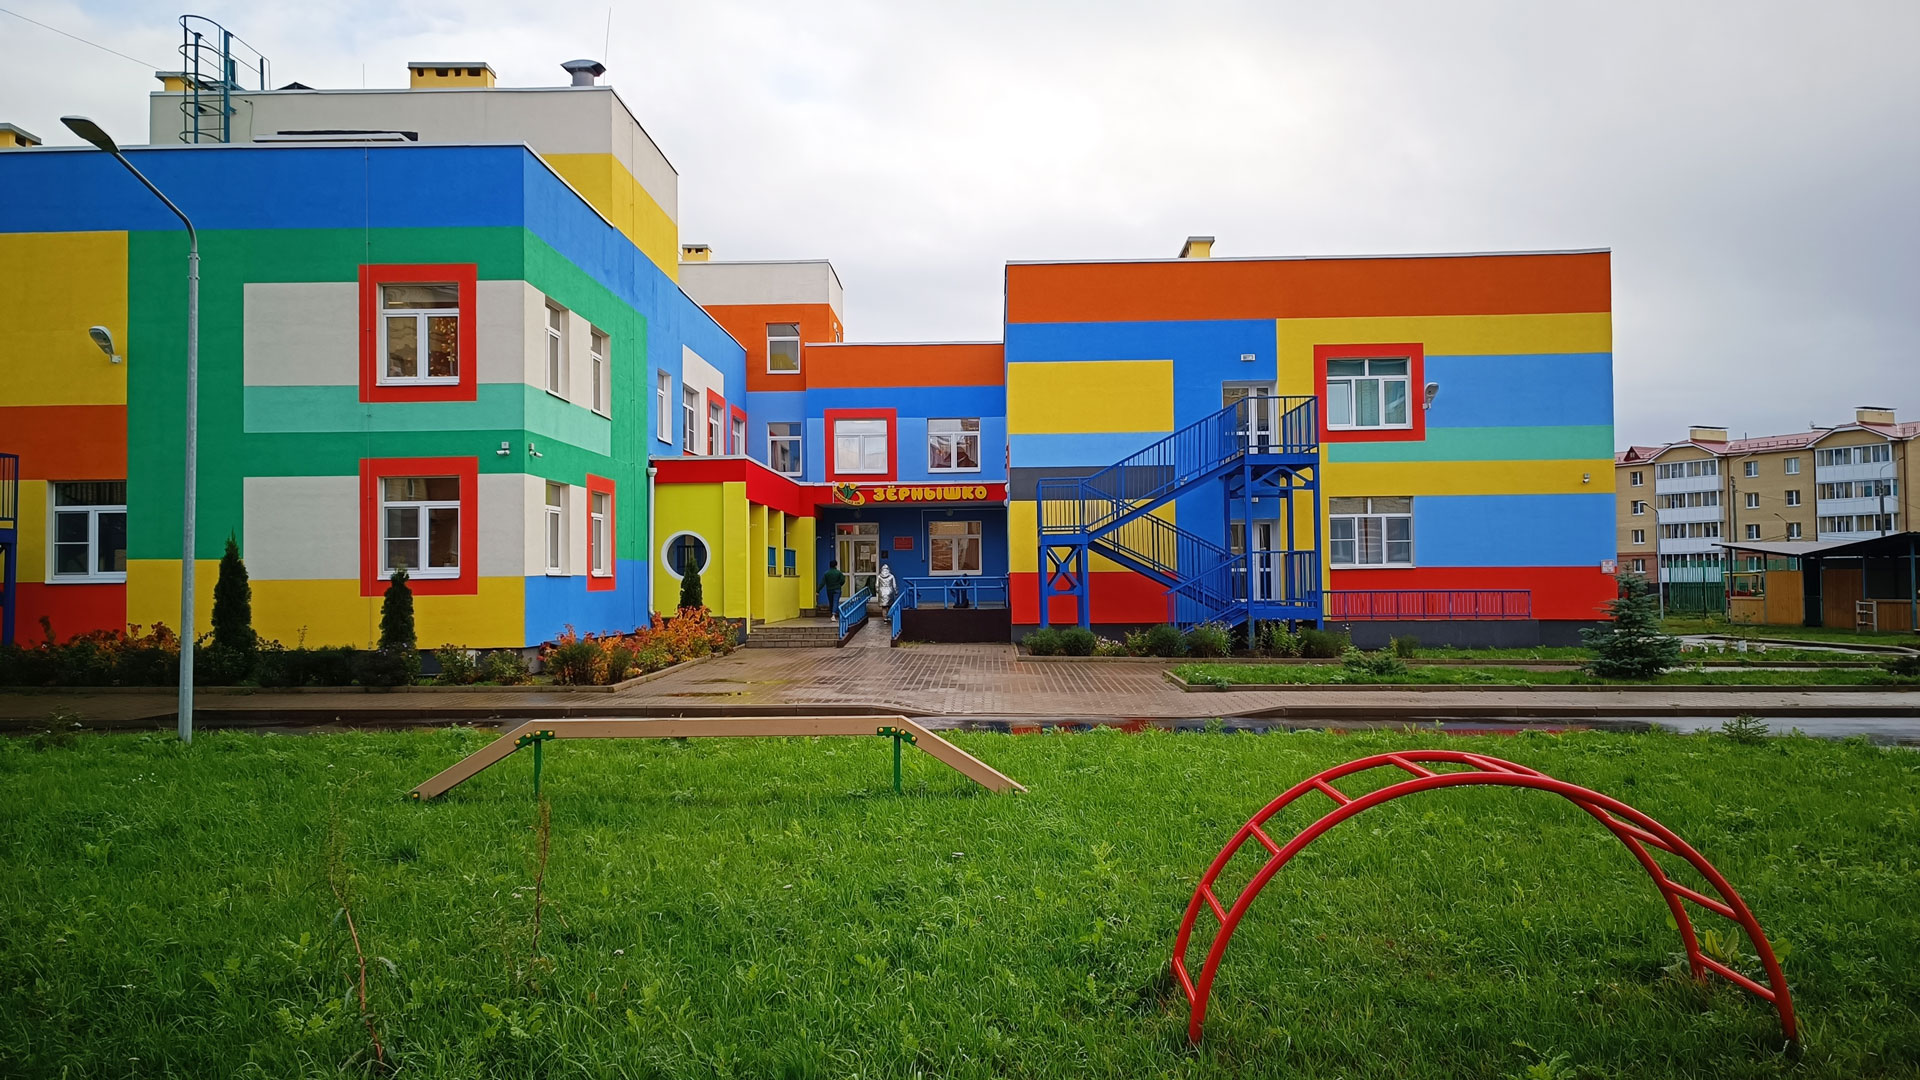 Детский сад 108 Ярославль: общий вид здания.